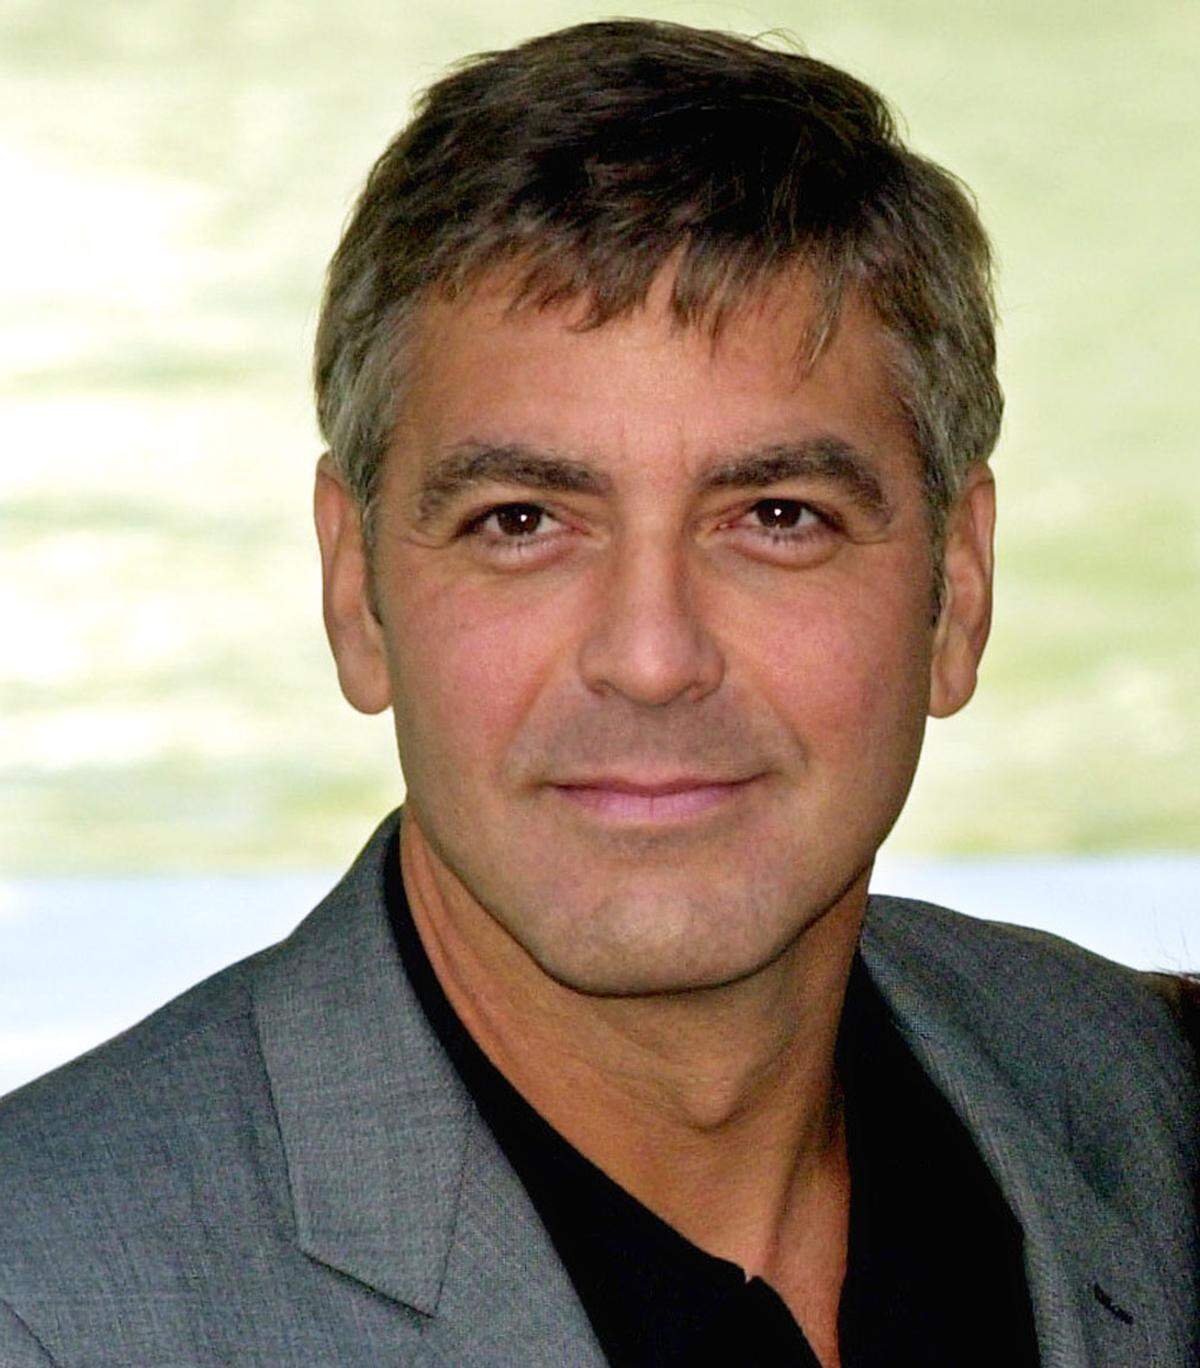 Hier haben wir ihn wieder: George Clooney debütierte 1998 als Single an der Spitze der Galerie der ''Sexy Männer". In diesem Jahr war er in "Batman & Robin" sowie "Projekt: Peacemaker" zu sehen.